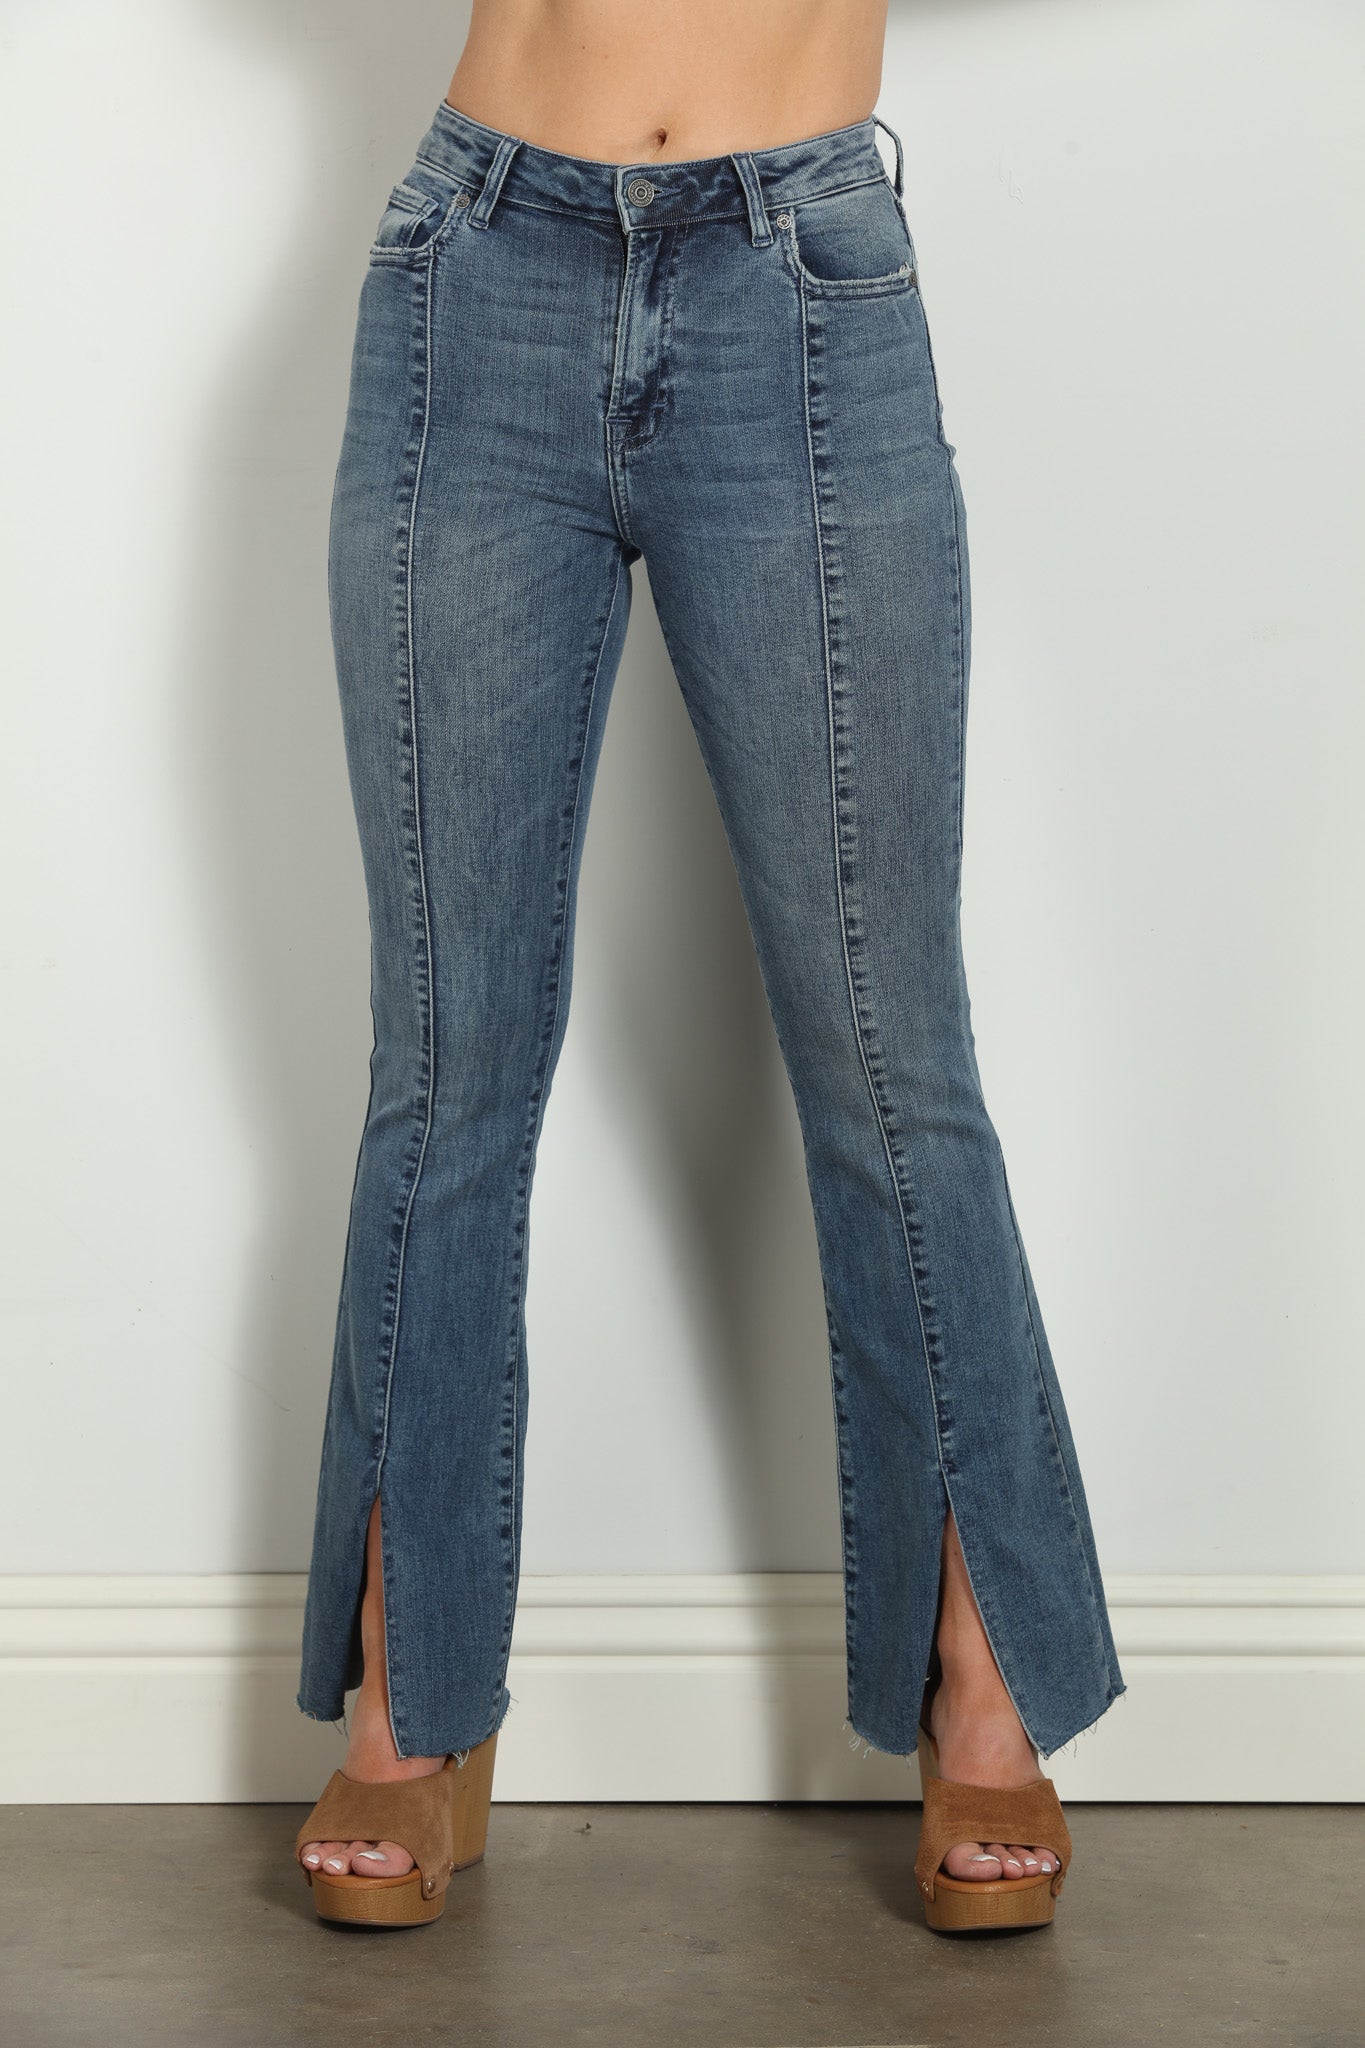 Happi Front Slit Flare Jeans - Medium Dark-FINAL SALE